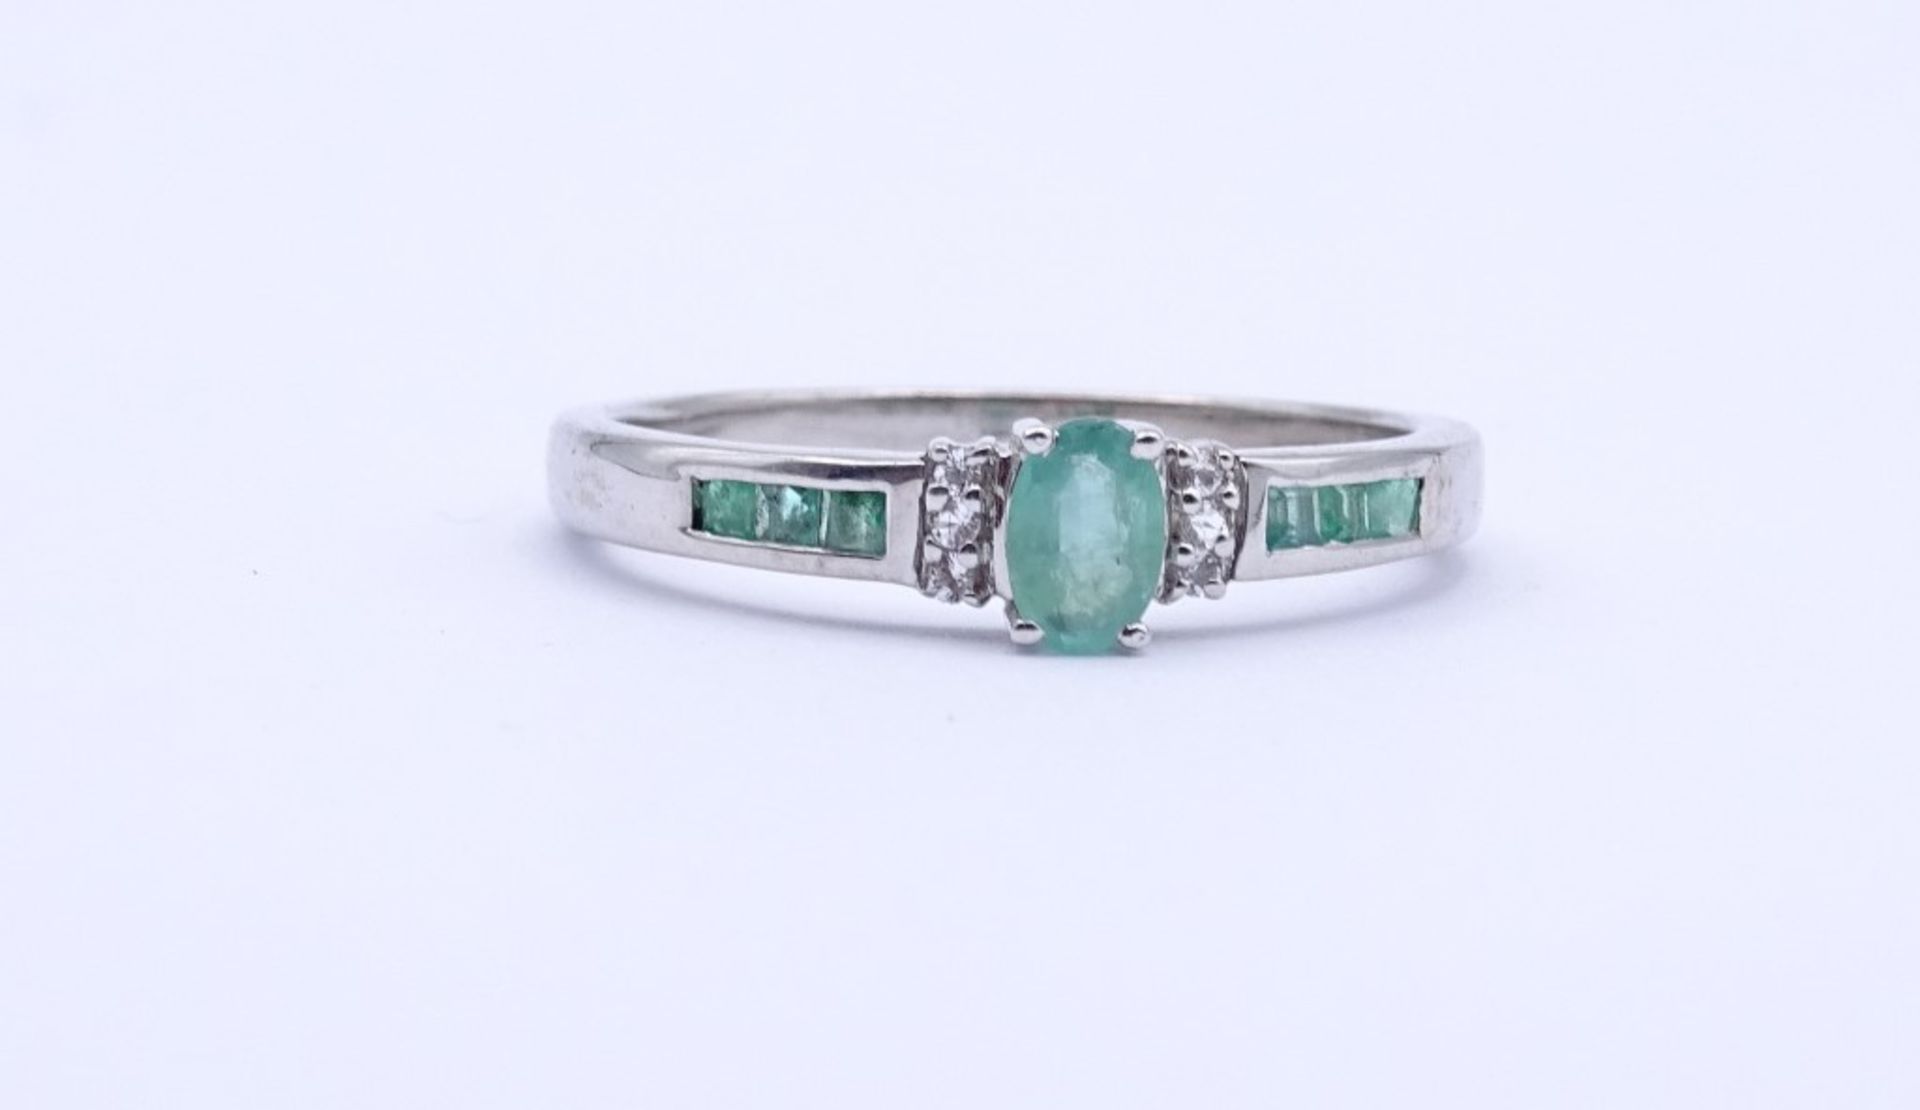 Silber- Smaragd-Ring,Sterling Silber 925/000, 3,3gr., RG 66""""